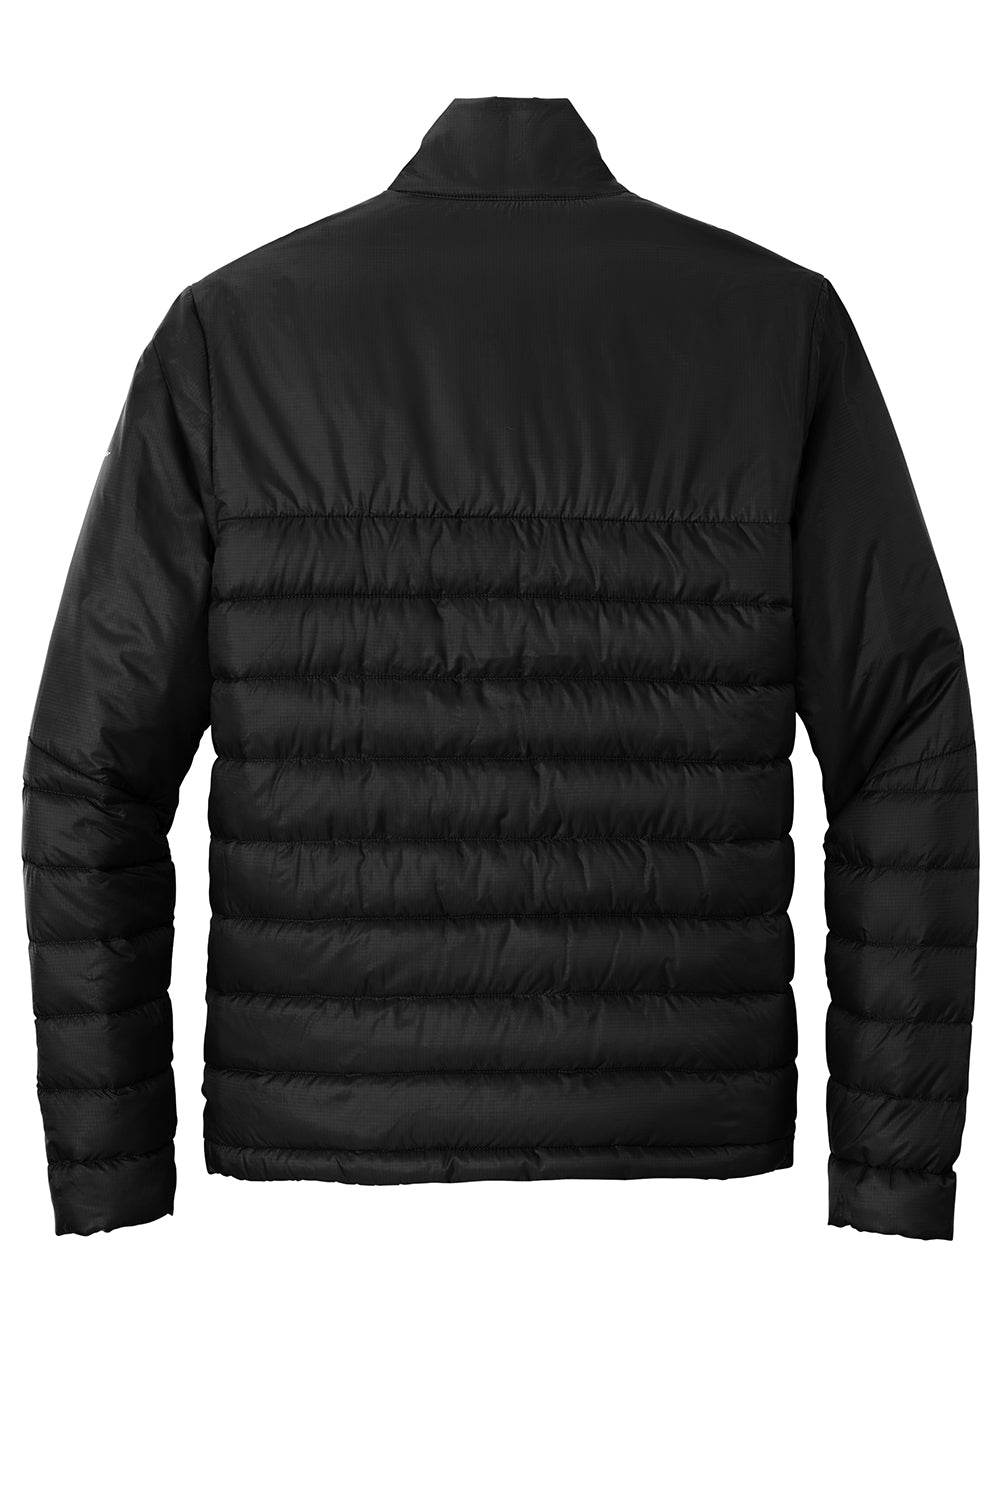 Eddie Bauer EB510 Mens Water Resistant Quilted Full Zip Jacket Deep Black Flat Back